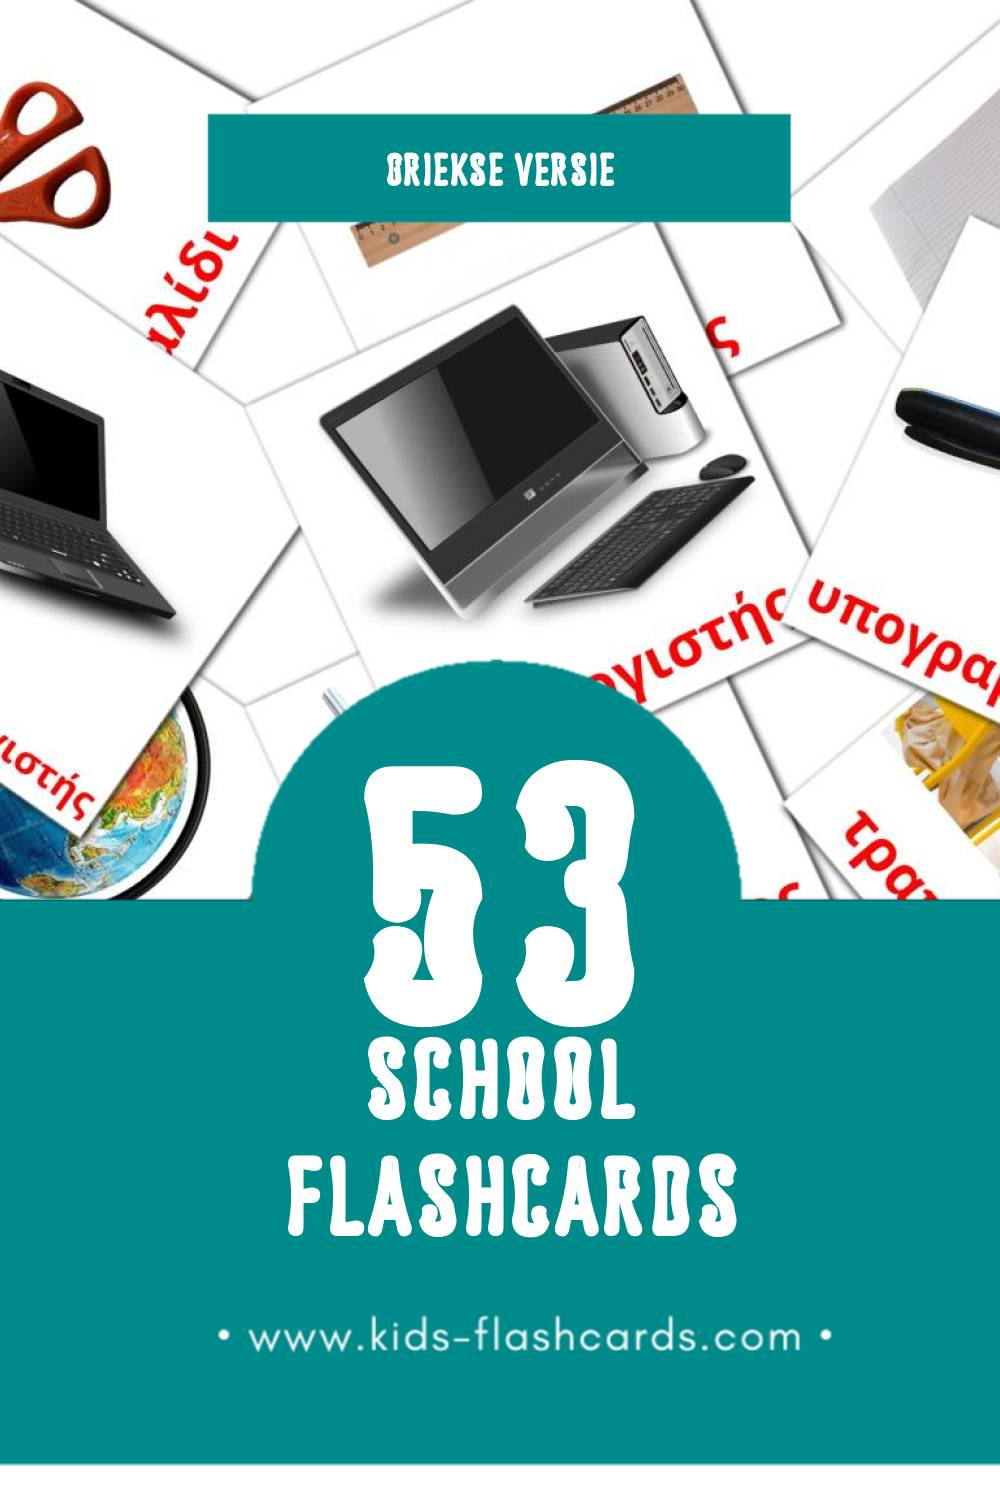 Visuele Σχολείο Flashcards voor Kleuters (53 kaarten in het Grieks)